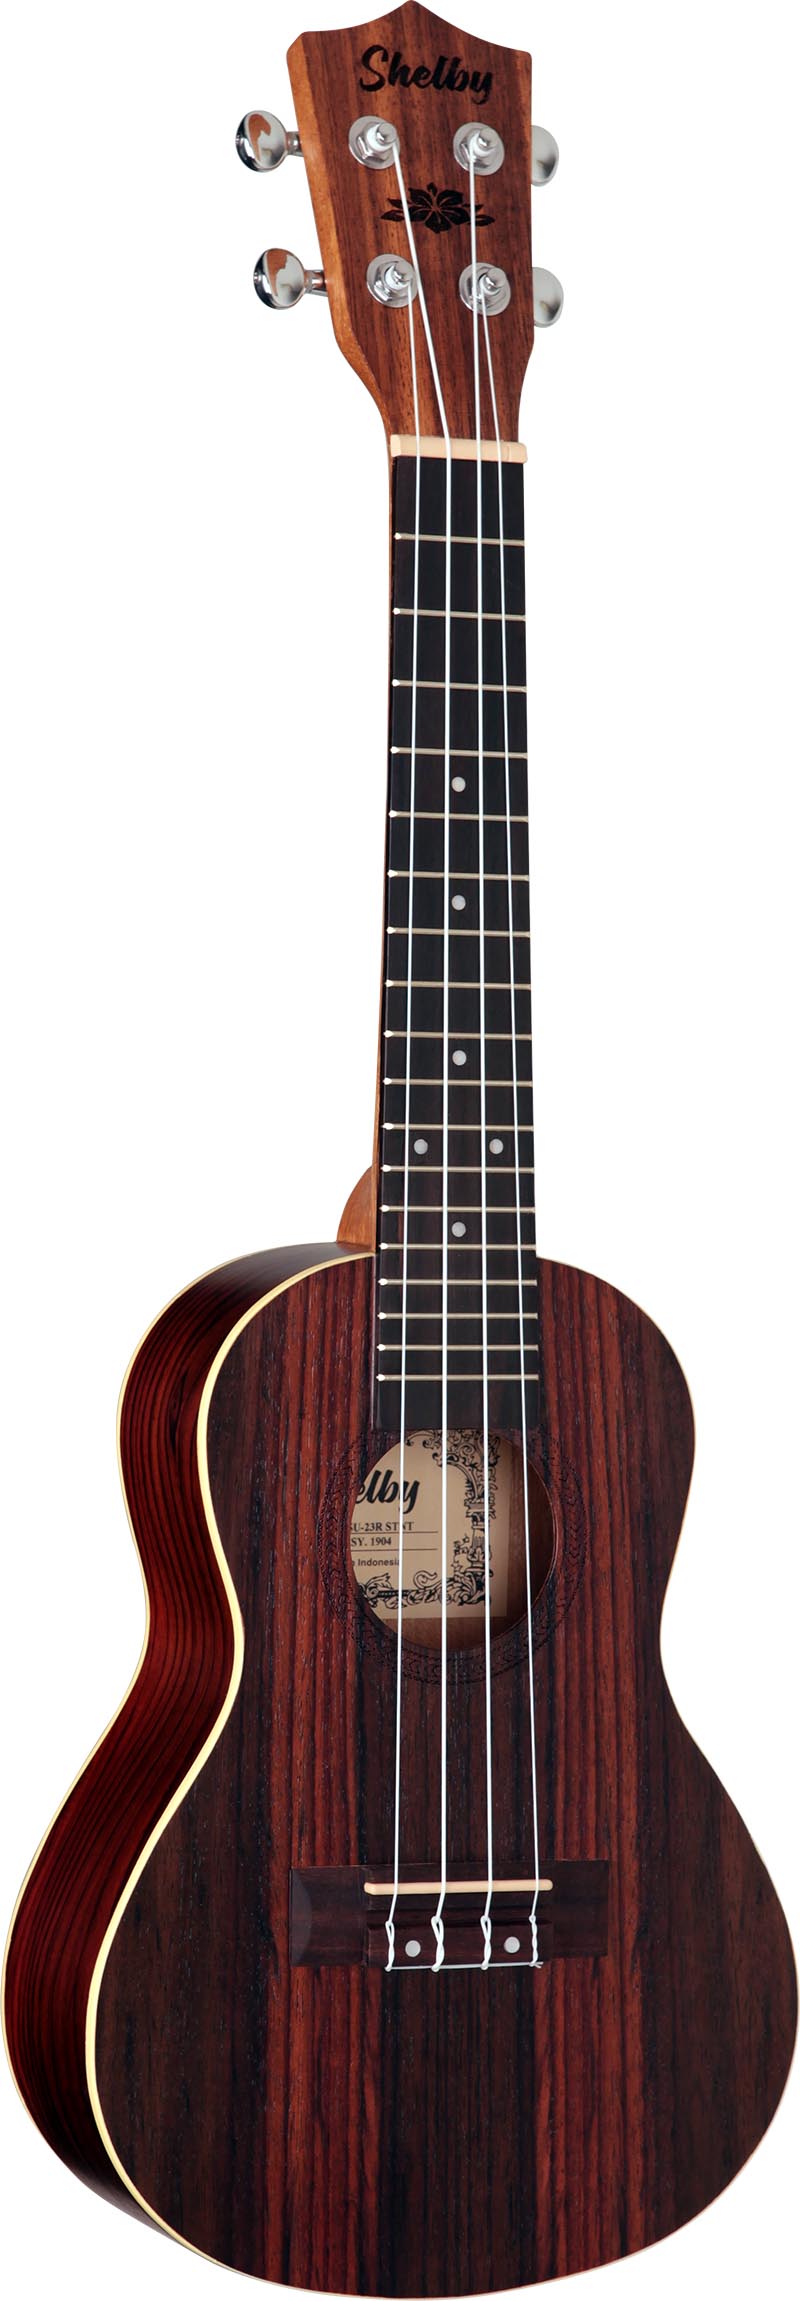 su23r ukulele concerto shelby su23r stnt jacaranda acetinado visao frontal vertical